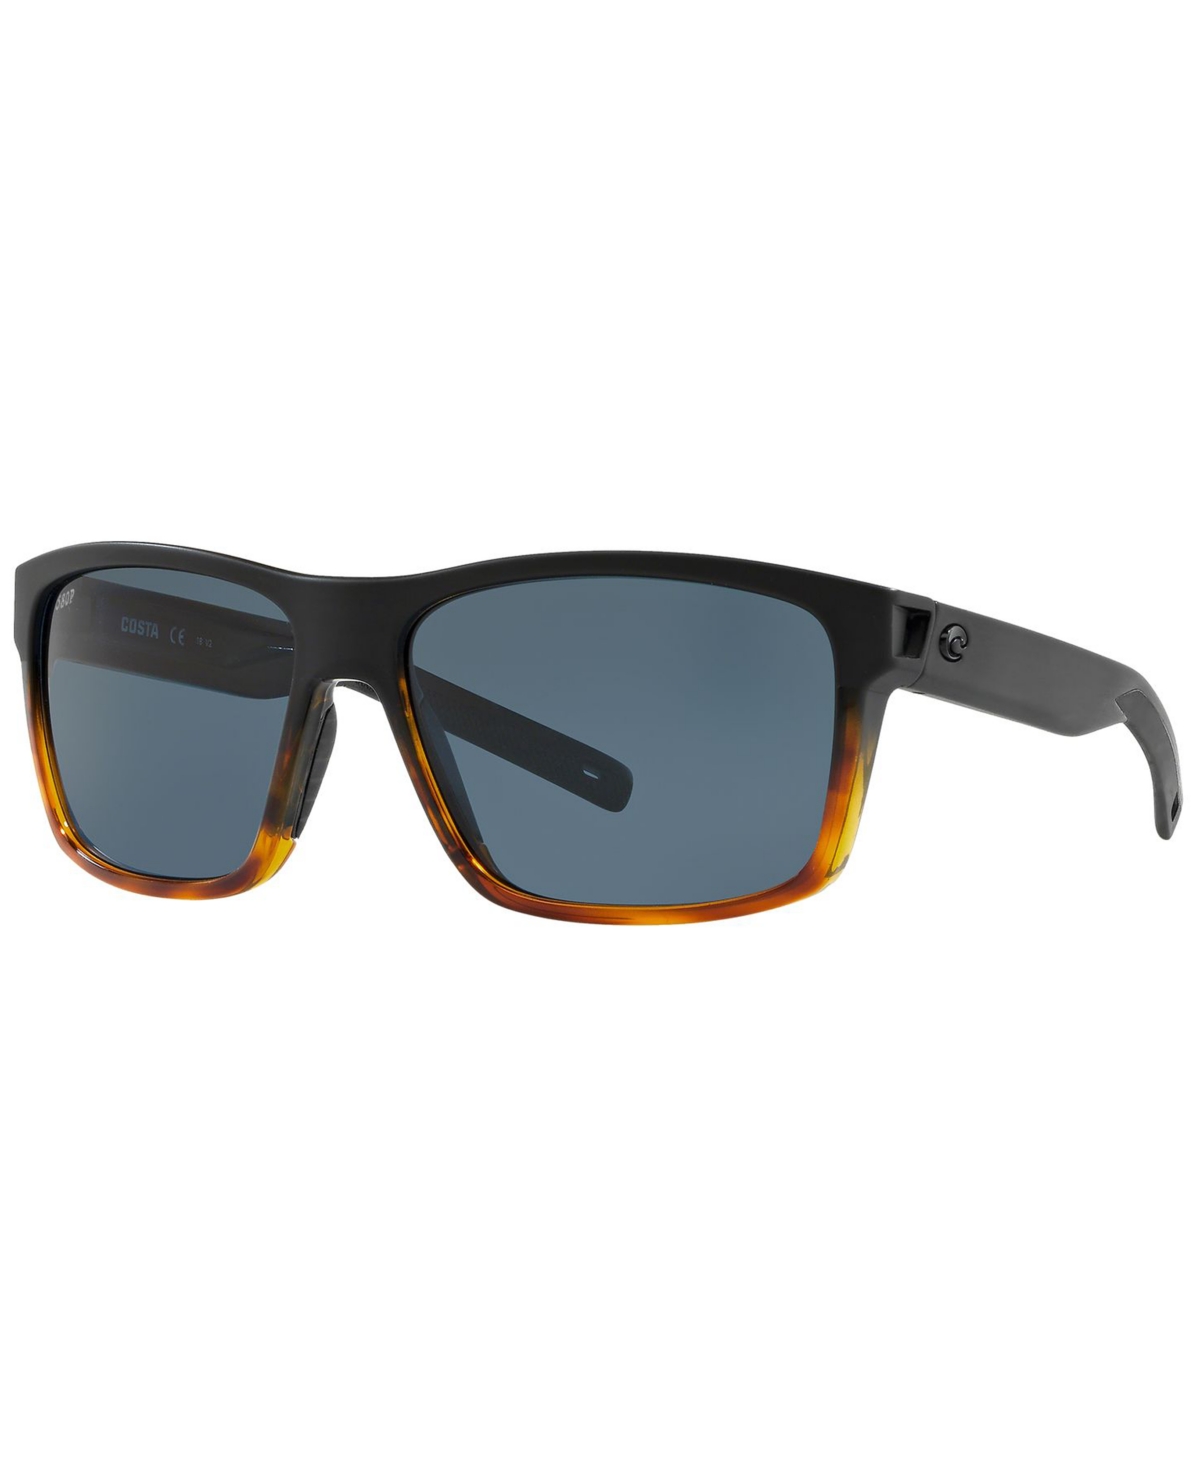 Costa Del Mar Polarized Sunglasses, Slack Tide 60 In Black Tortoise,grey Polar